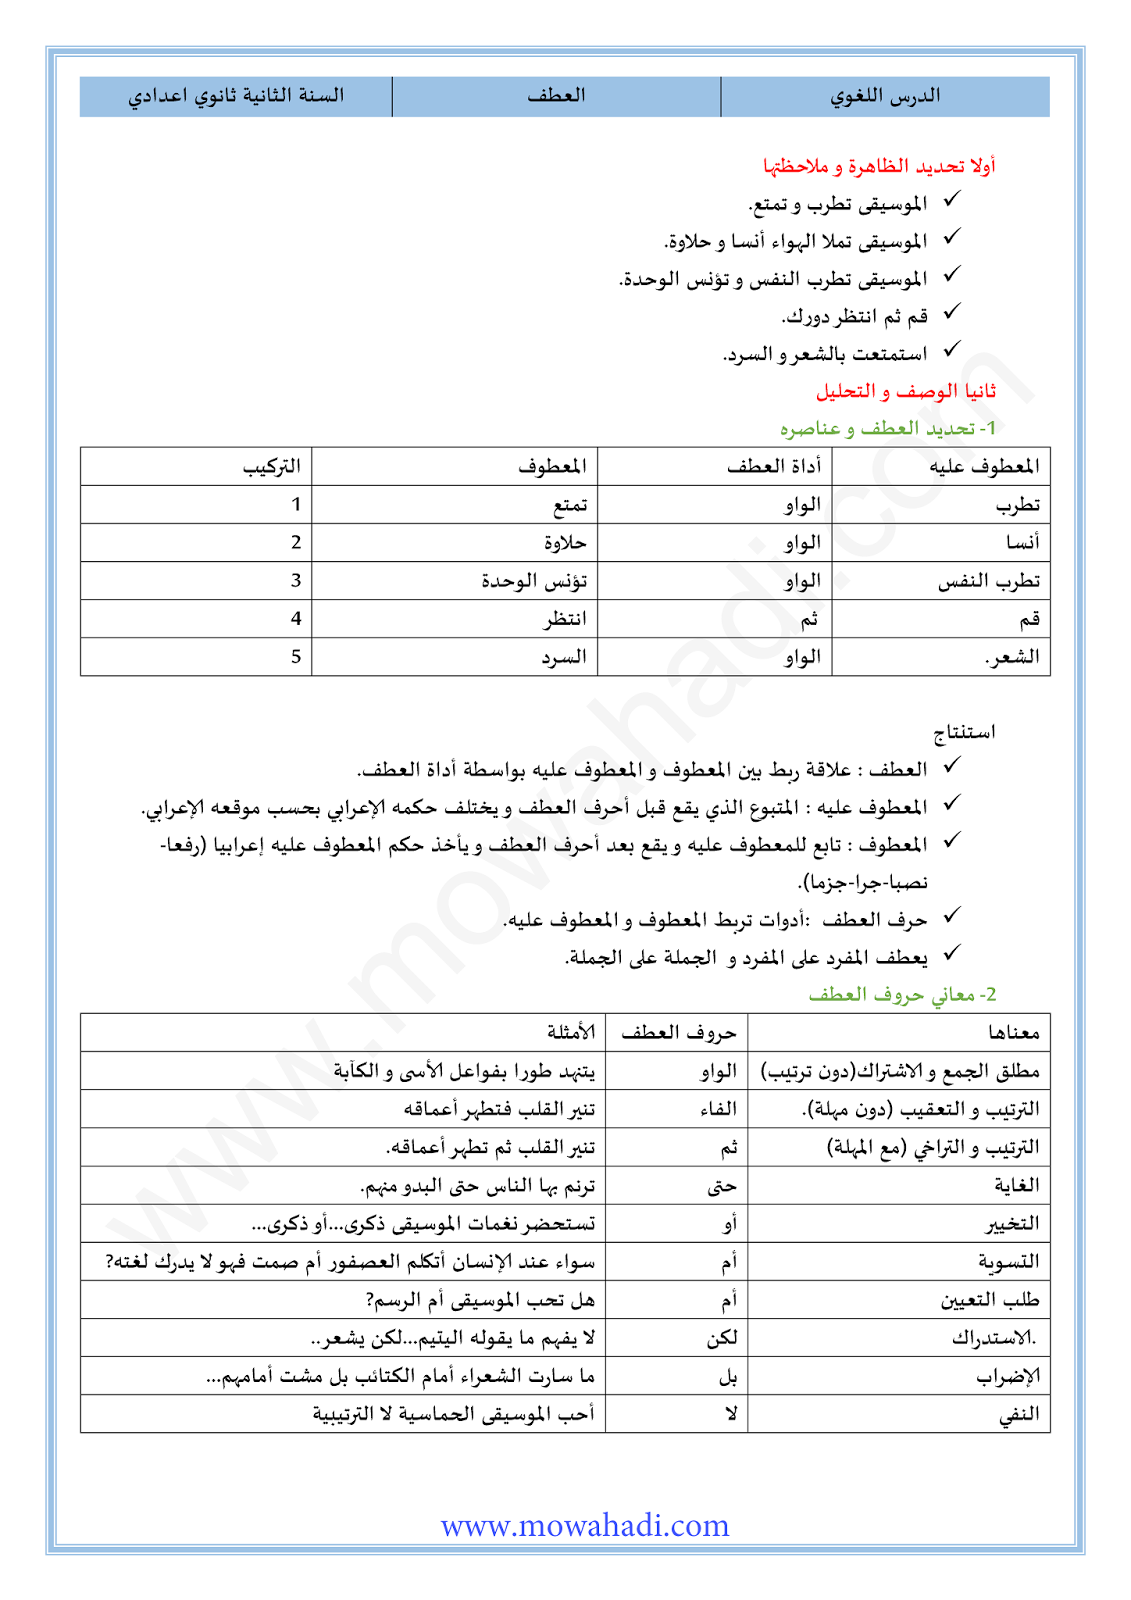 الدرس اللغوي العطف للسنة الثانية اعدادي في مادة اللغة العربية 18-cours-loghawi2_001